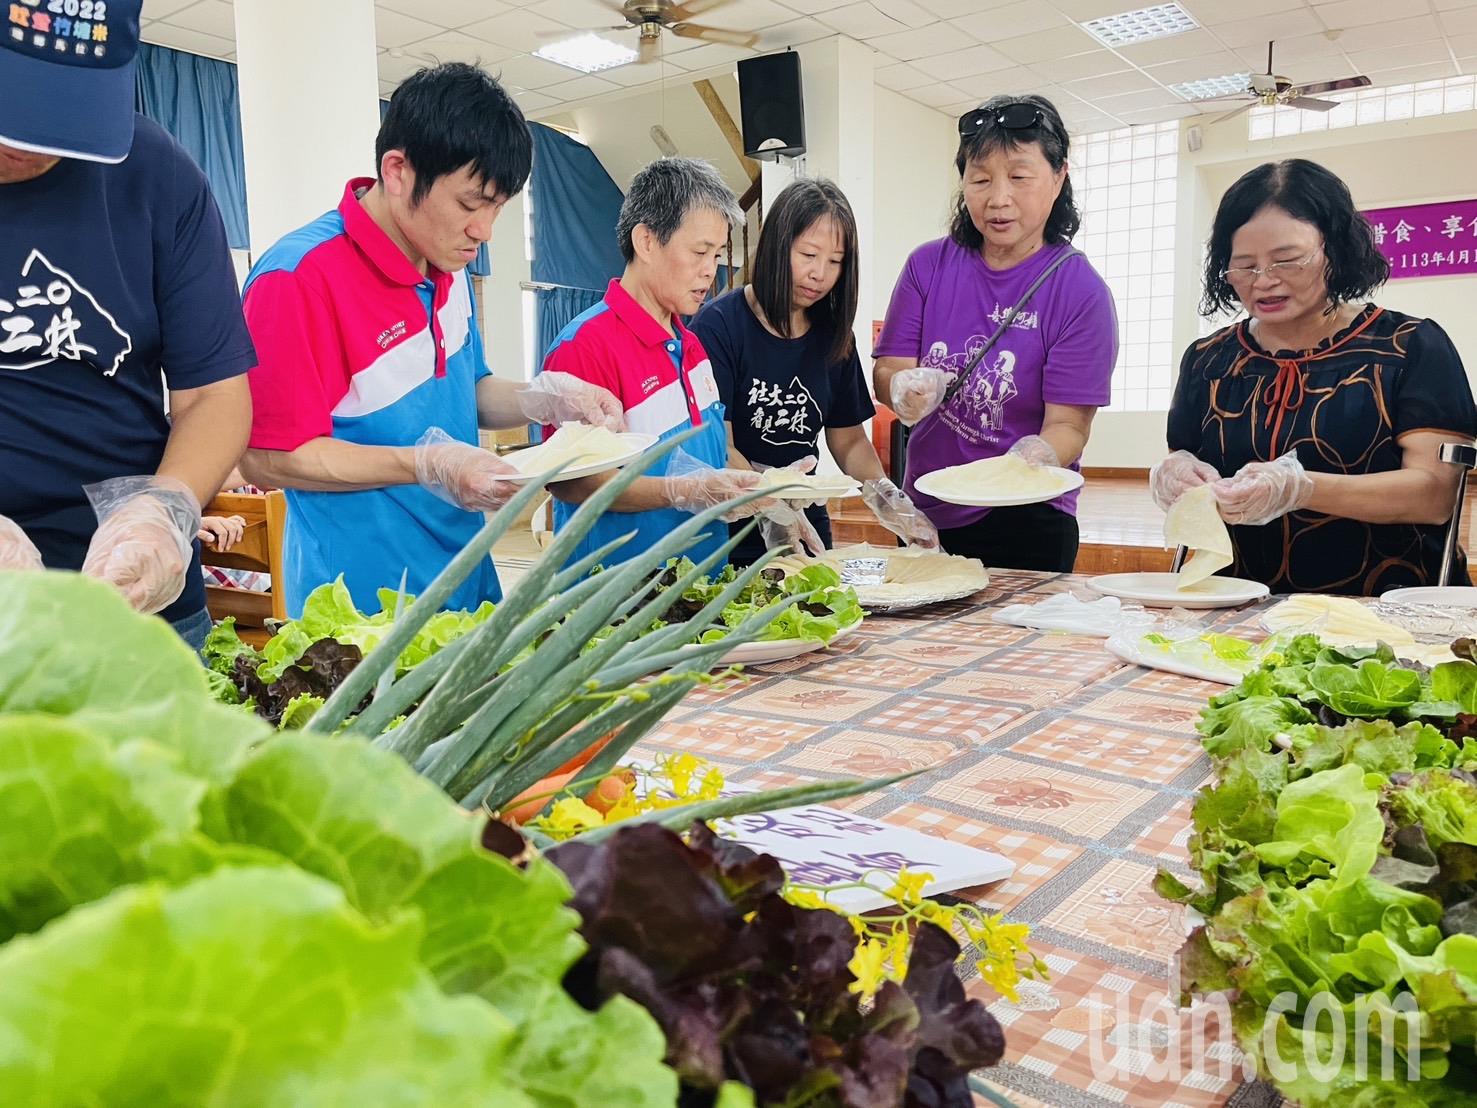 彰化县二林喜乐保育院师生今采收蔬菜做蔬菜卷。记者简慧珍／摄影